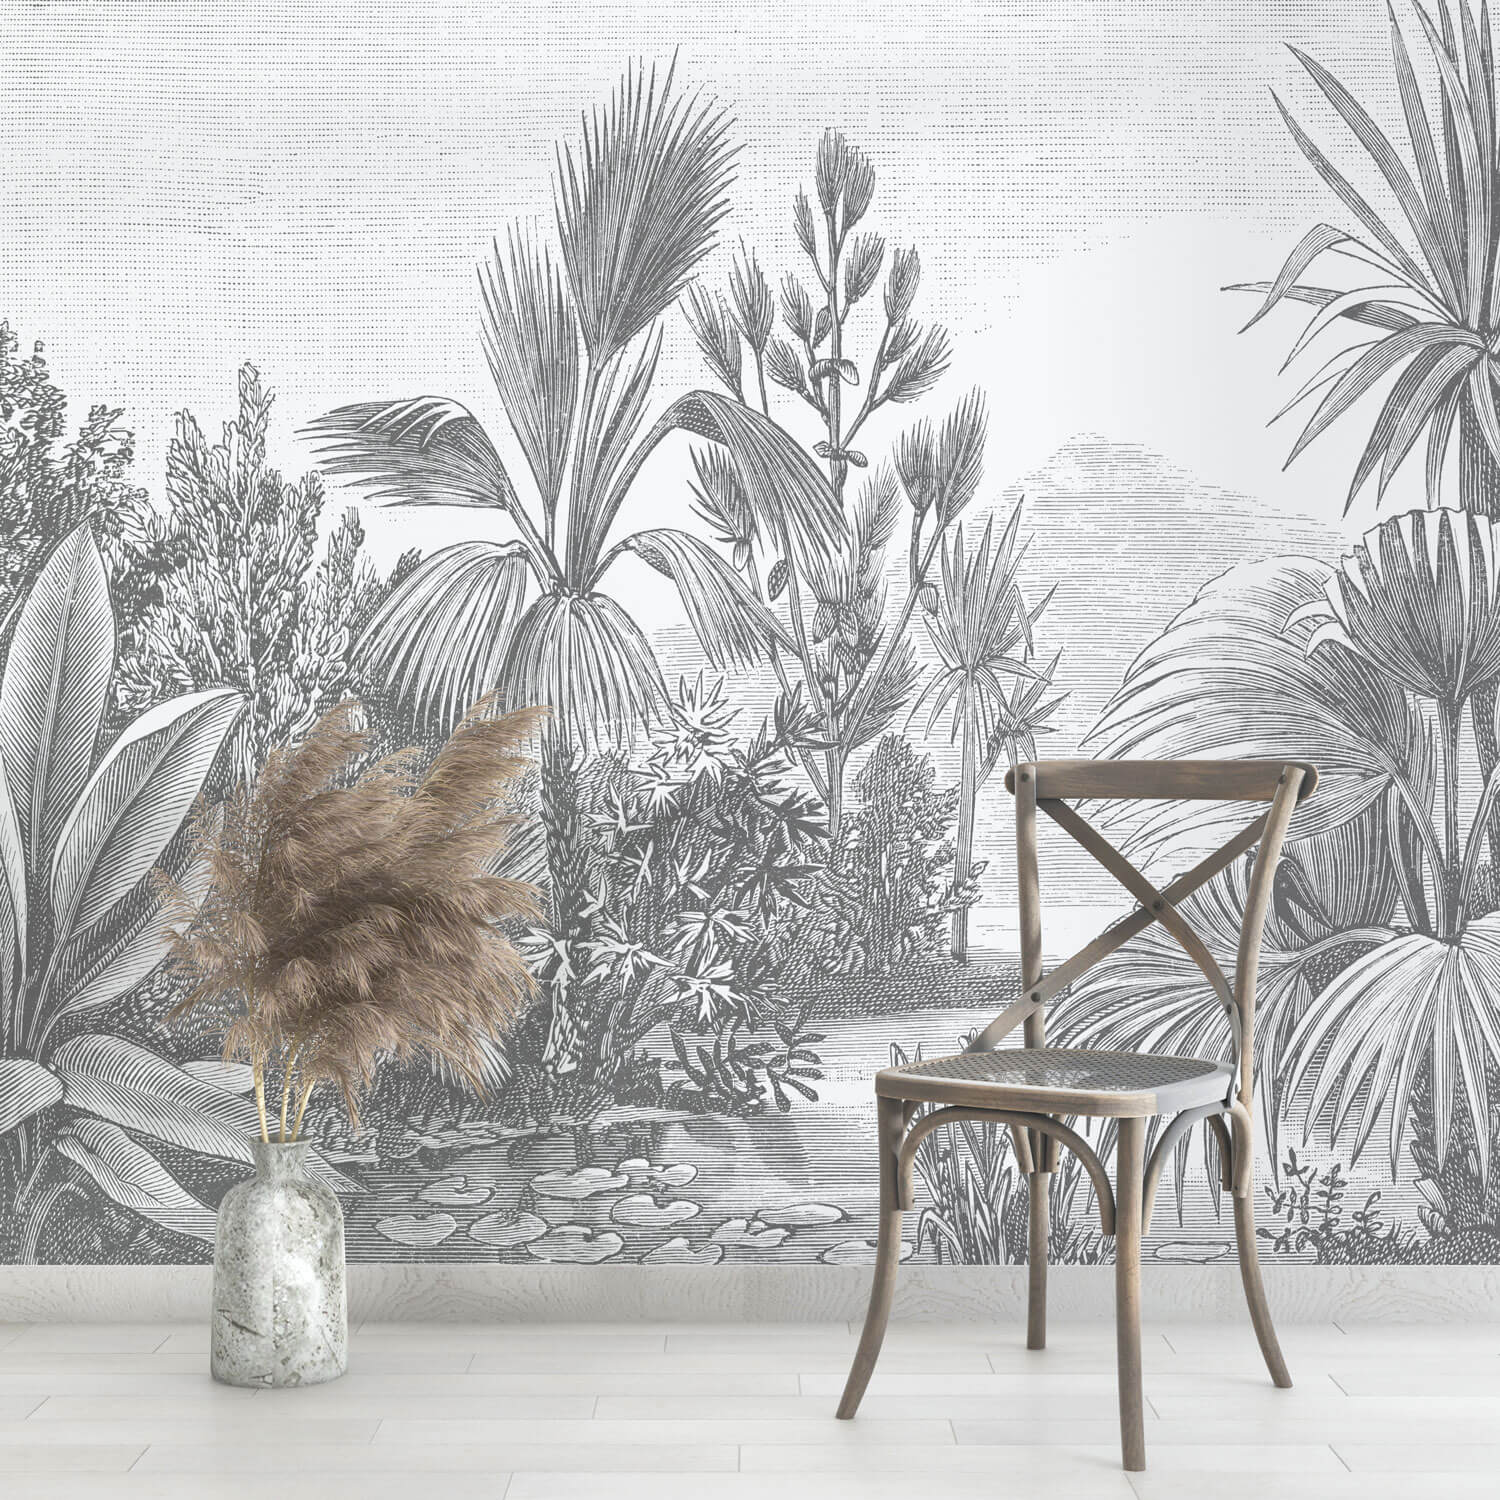 Schwarz-weisse Motivtapete mit Landschaft aus Palmen und Pflanzen.